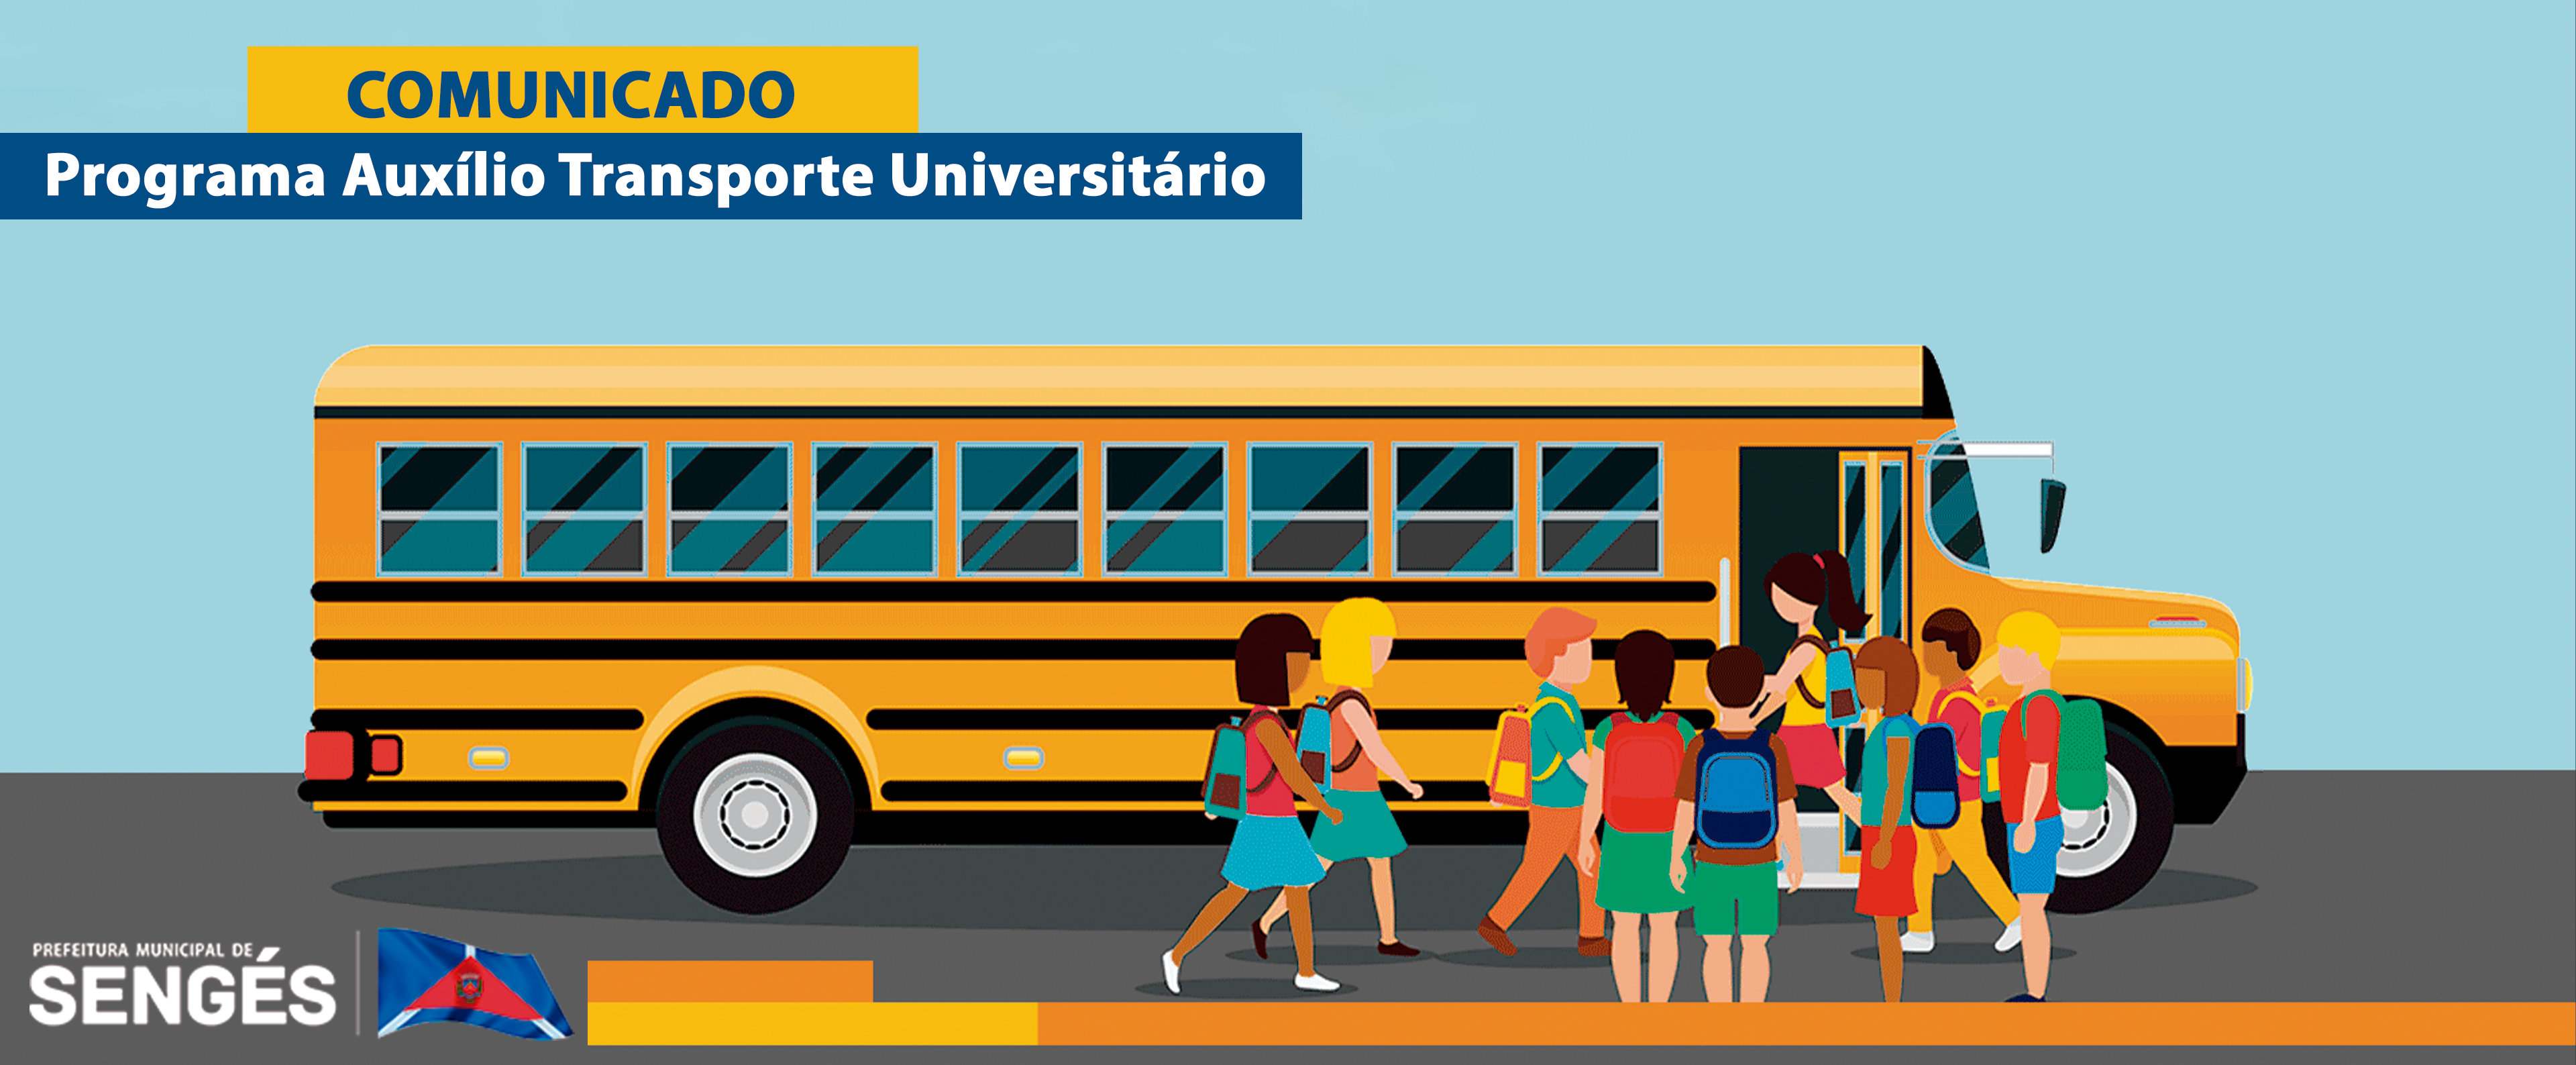 O MUNICÍPIO DE SENGÉS comunica aos estudantes habilitados no Programa Auxílio Transporte Universitário, para que compareçam a partir do dia 08/04/2023 (segunda-feira)